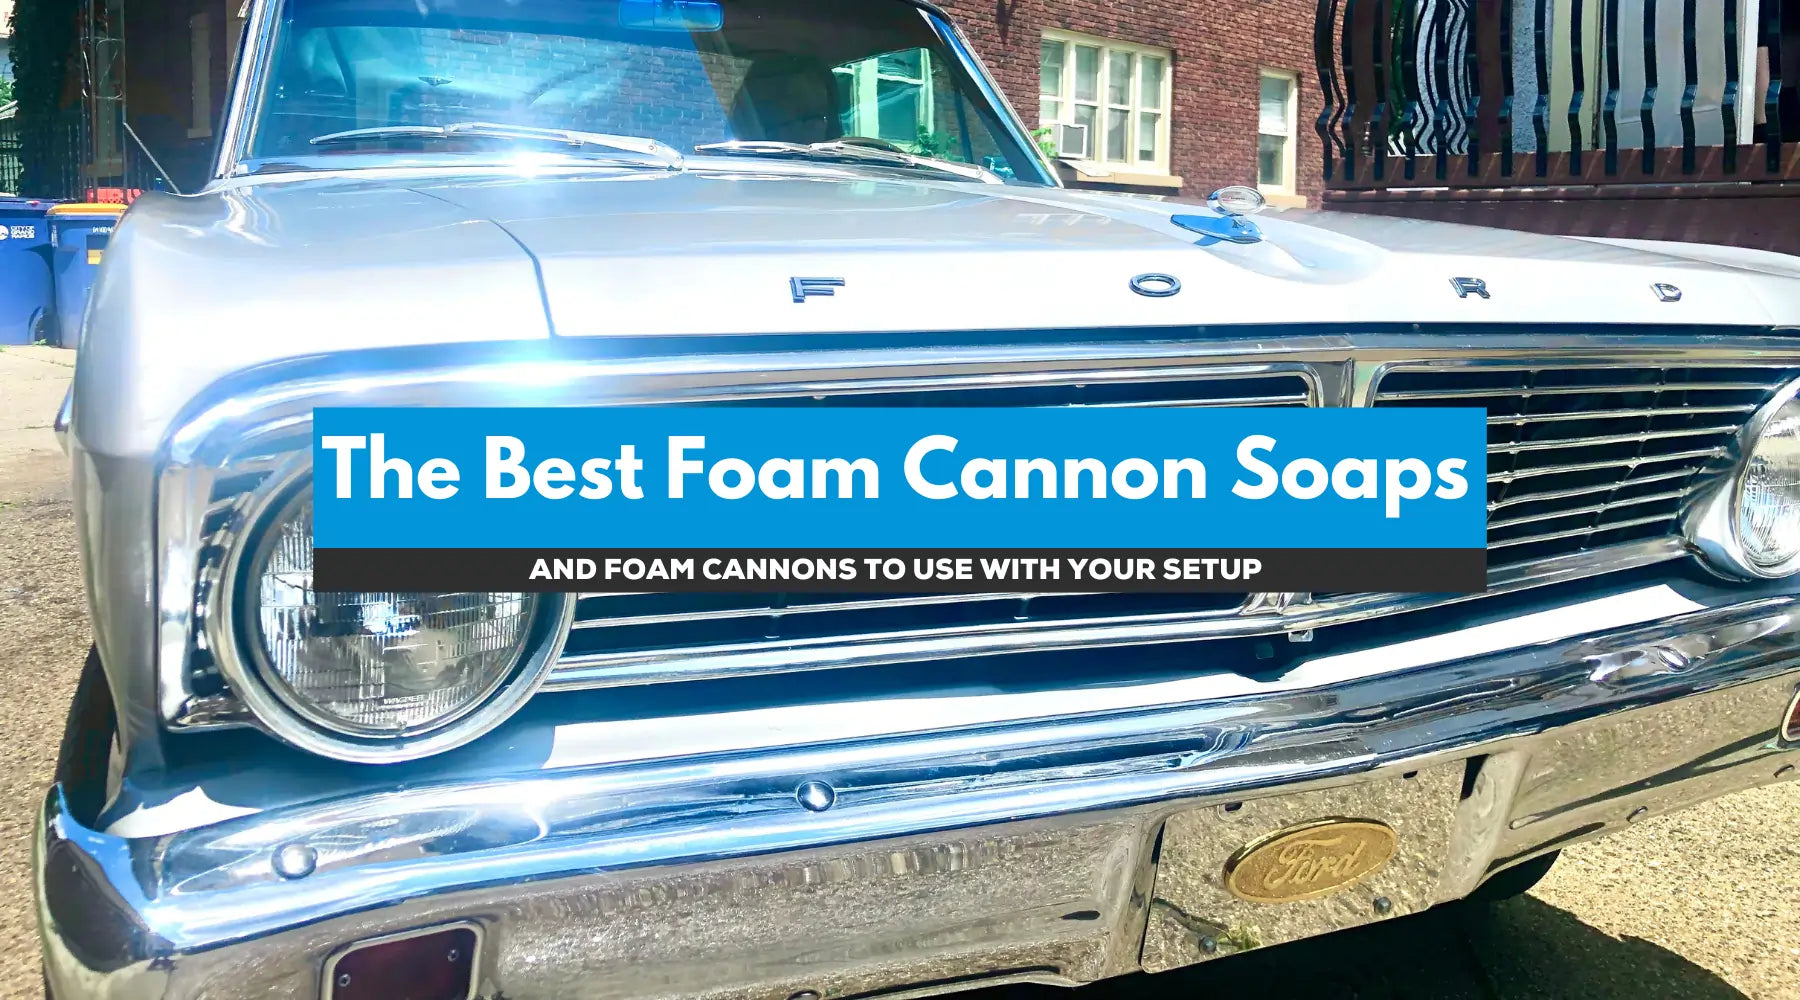 Ultra Suds Foam Cannon Soap